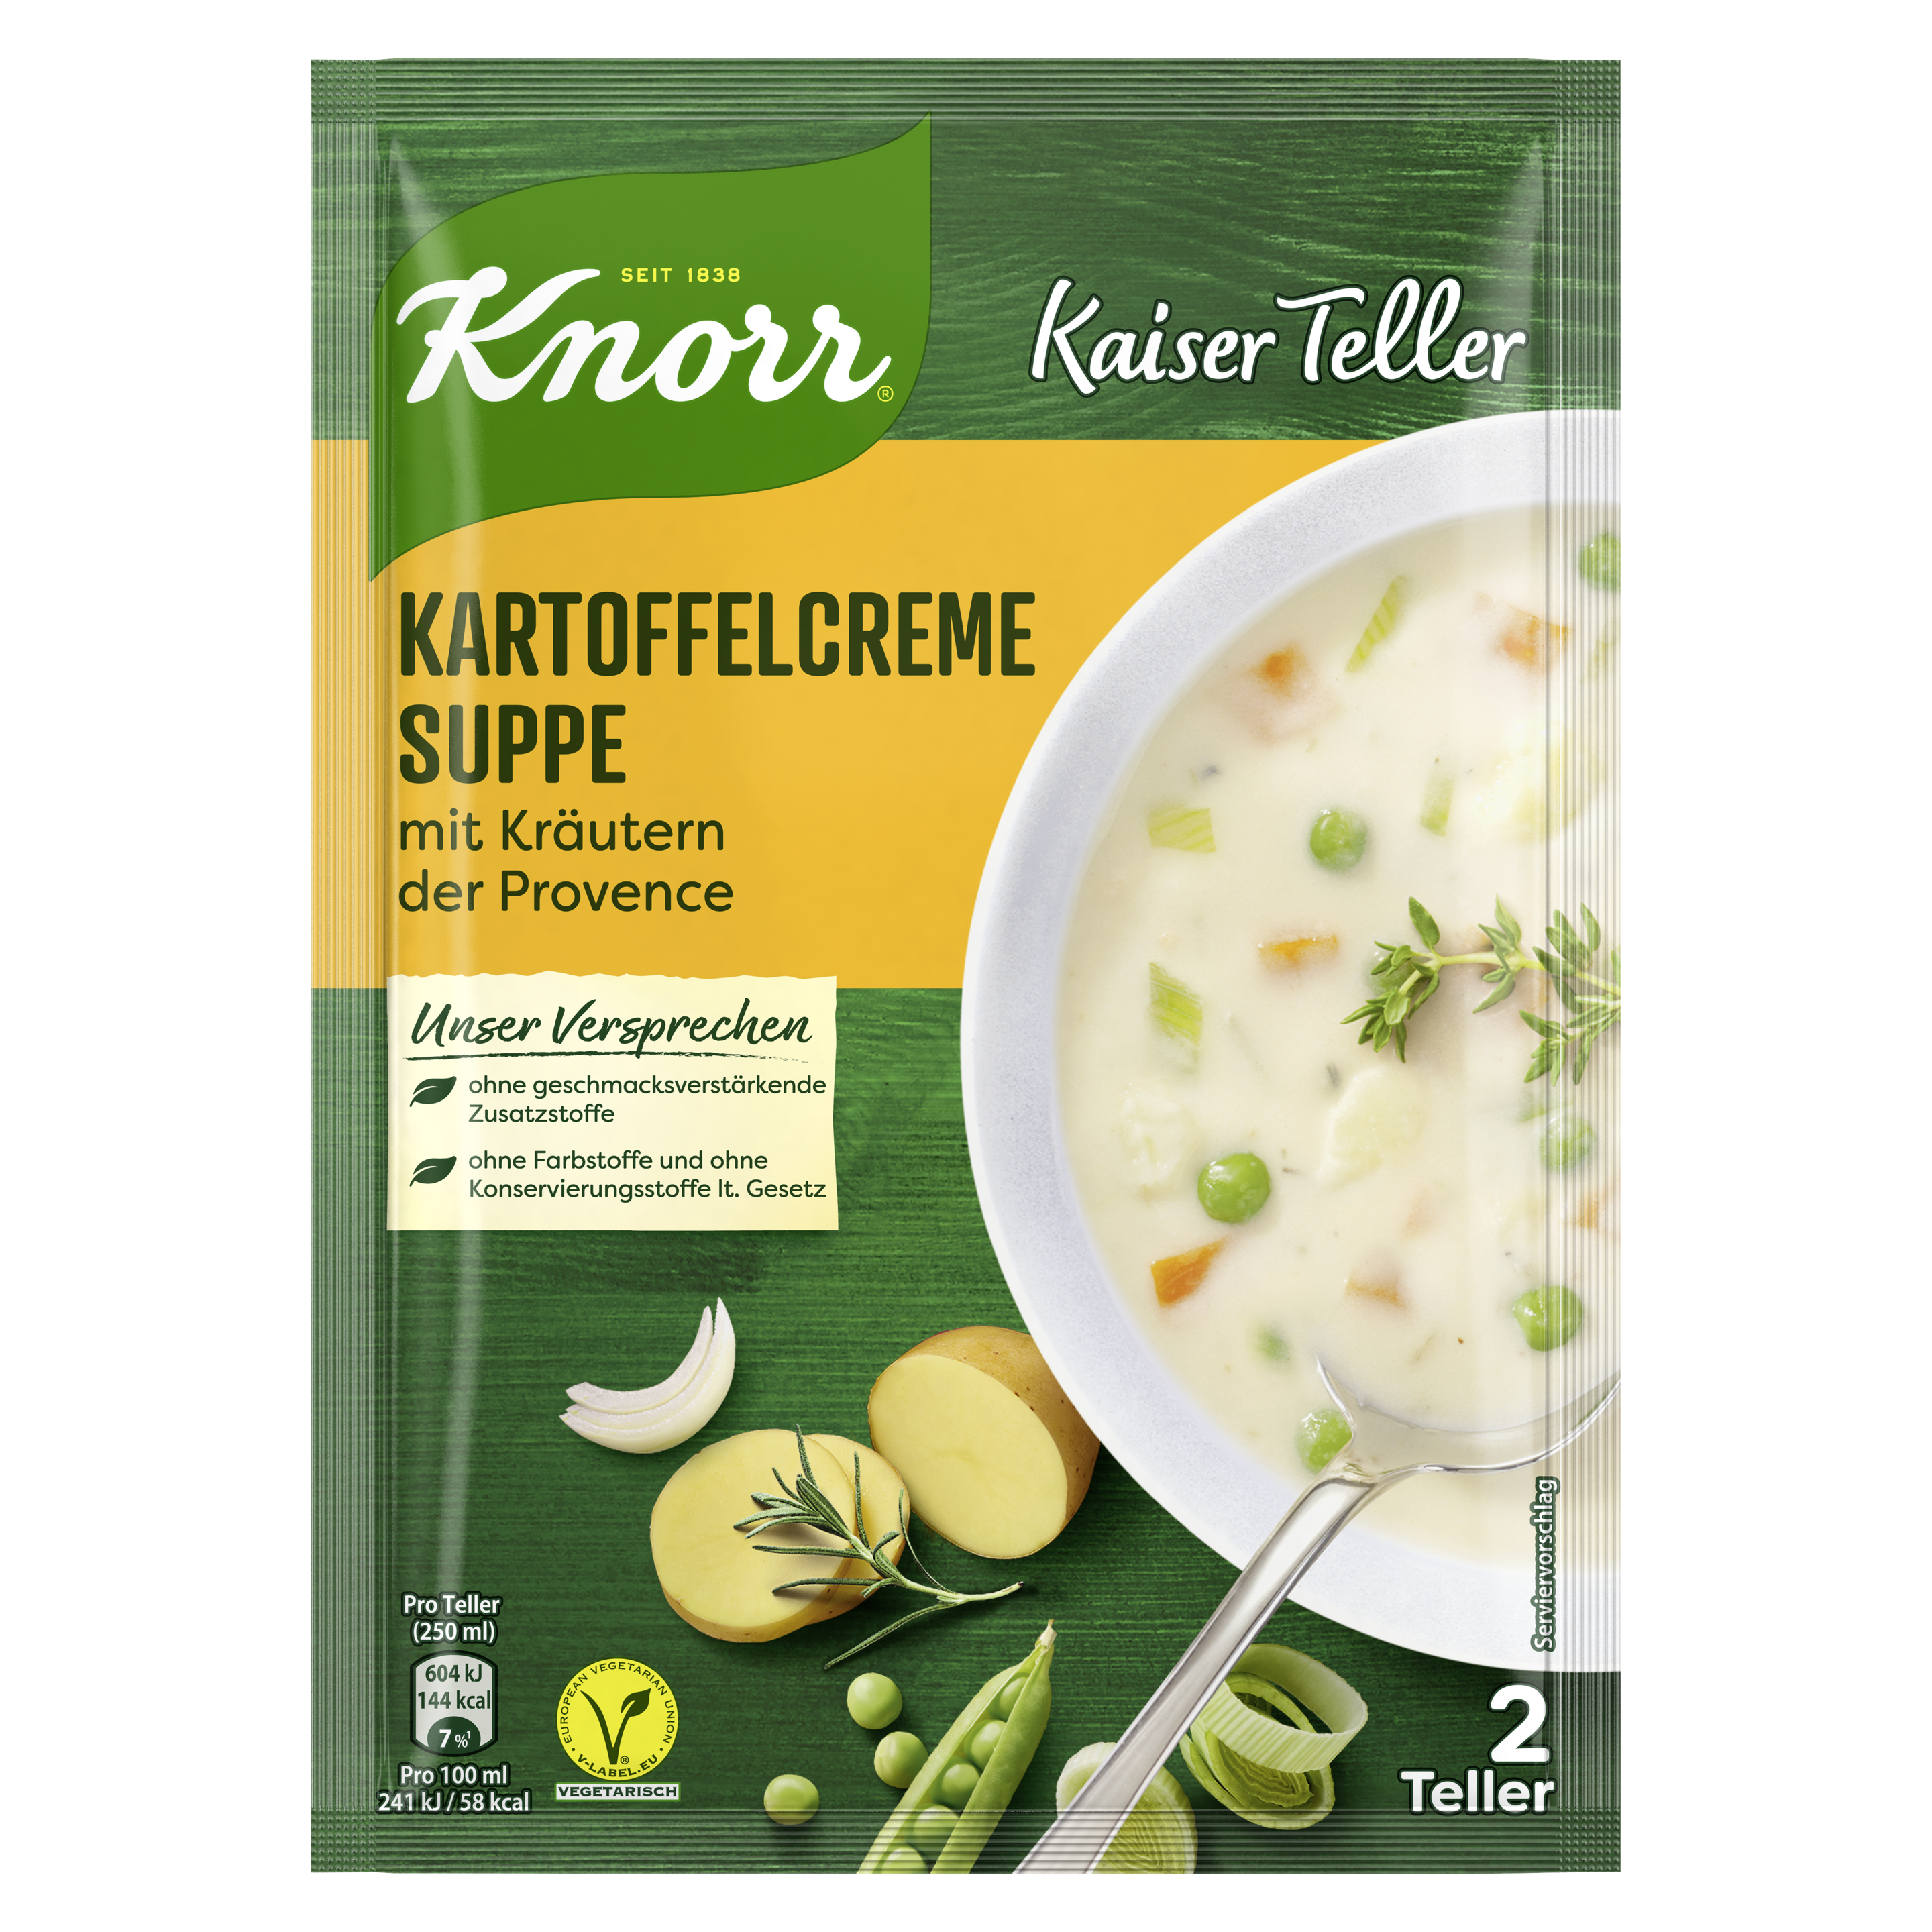 Knorr Kaiser Teller Vitamin Plus Kartoffelcreme Suppe 2 Teller